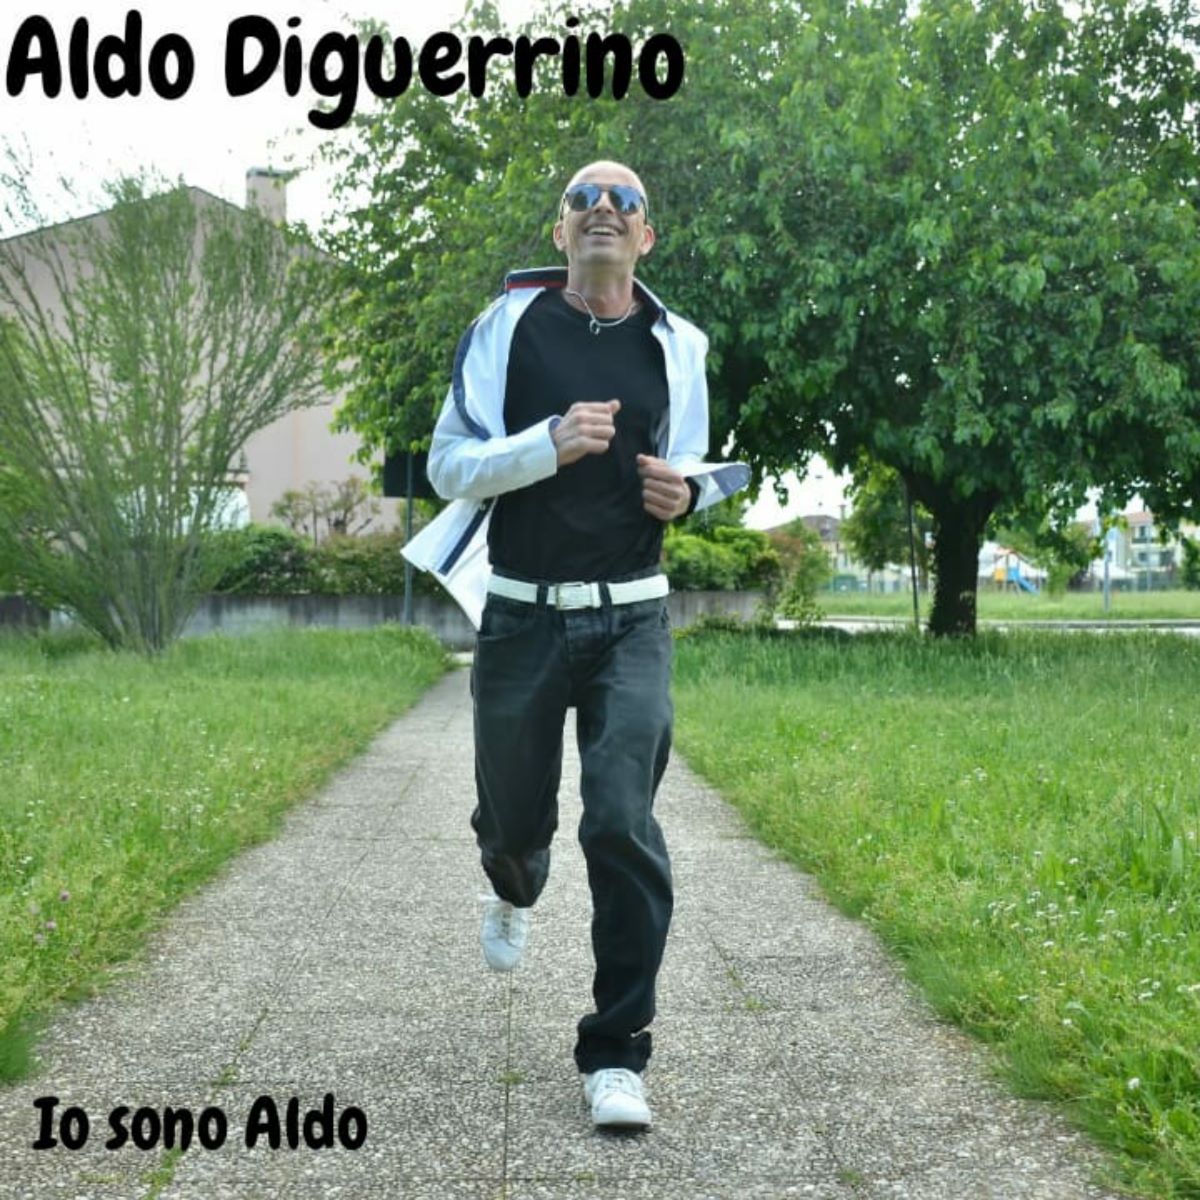 Aldo Diguerrino - Il nuovo singolo “Io sono Aldo”